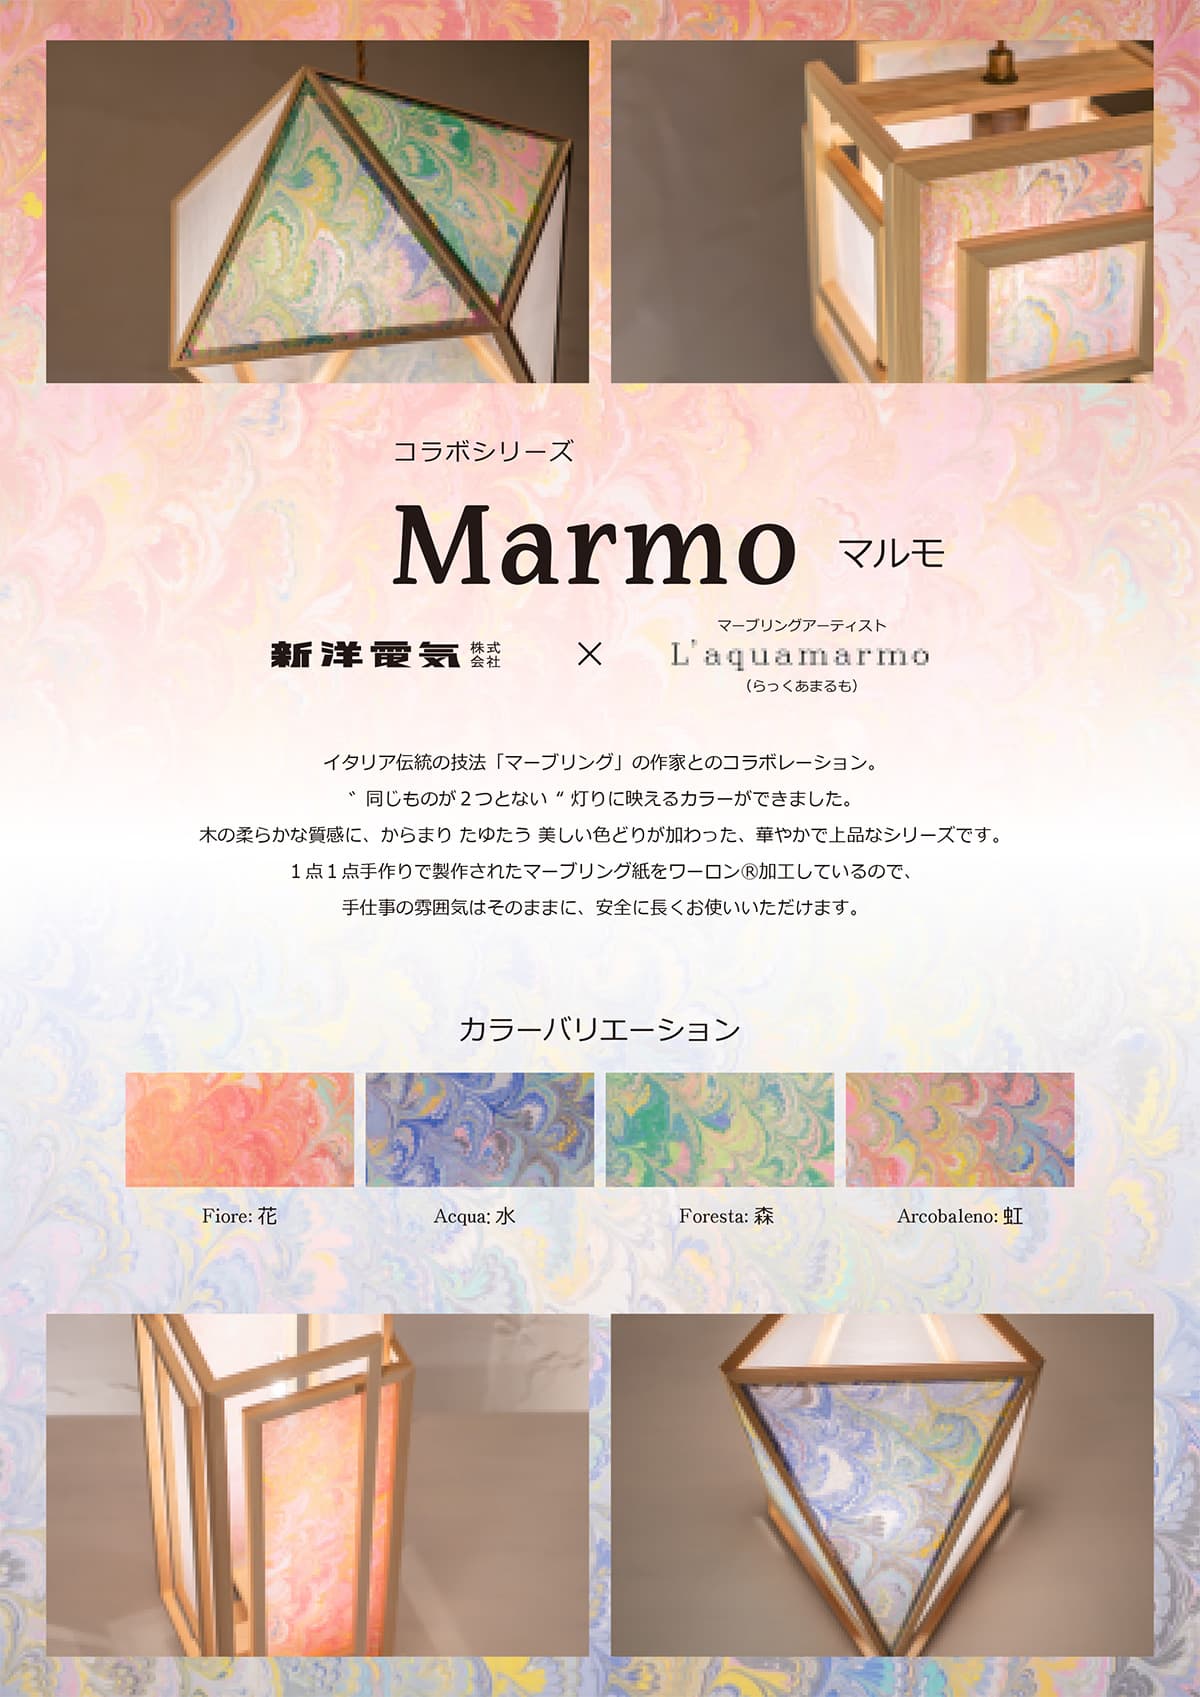 マーブリングコラボレーション商品『Marmo』